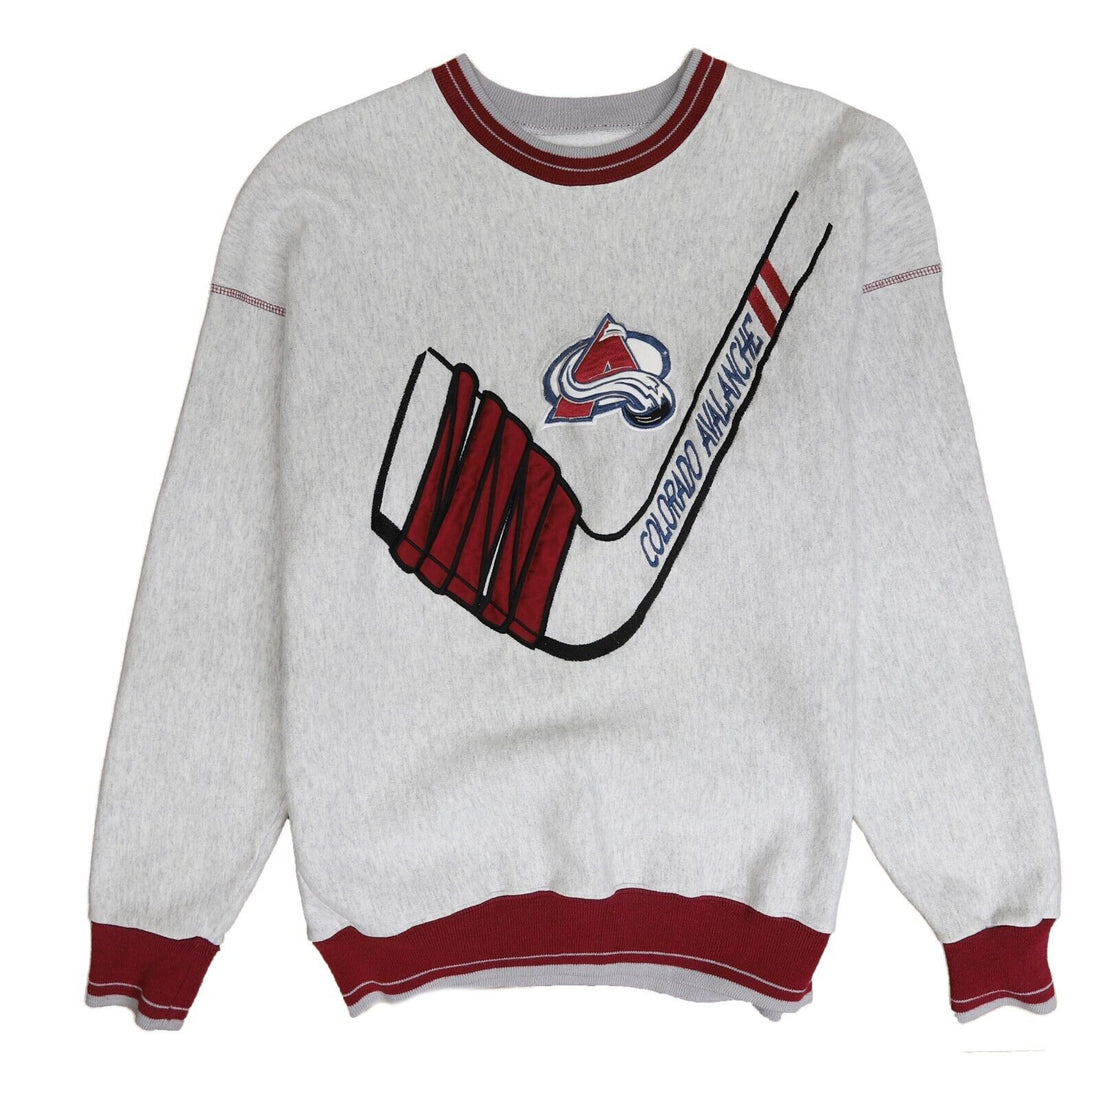 Vintage Colorado Avalanche Legends Sweatshirt Crewneck Size Large 90s NHL